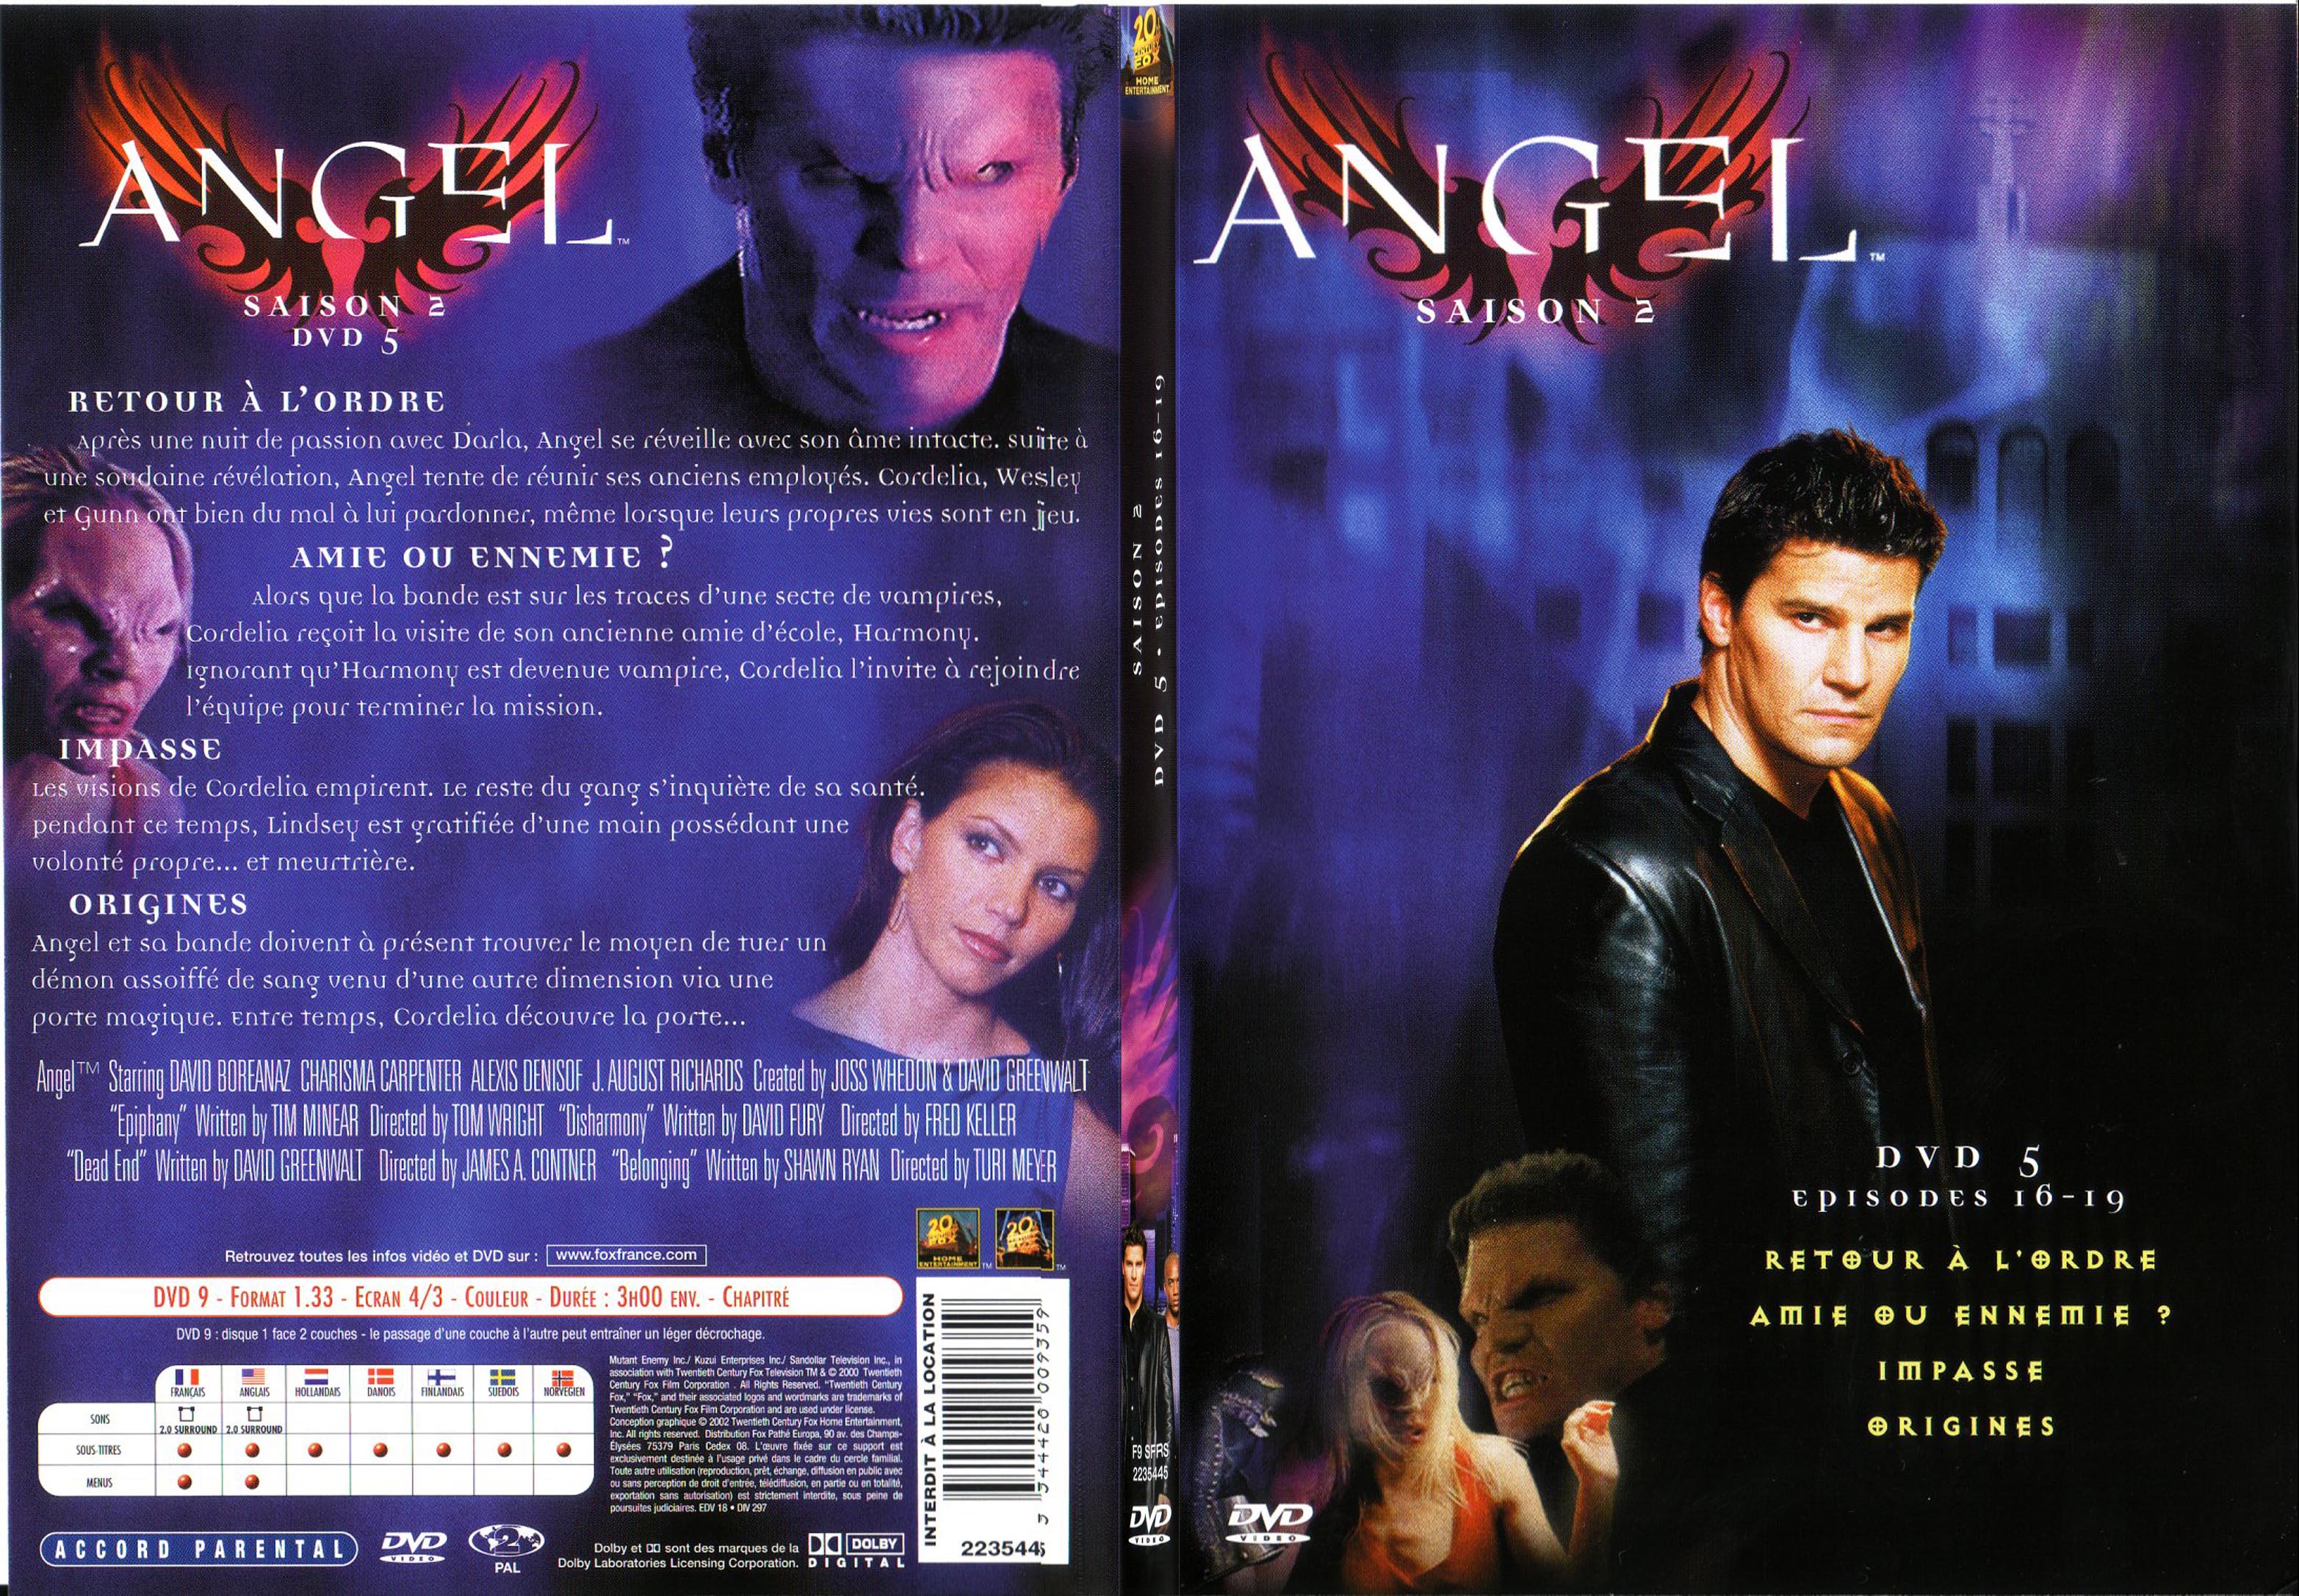 Jaquette DVD Angel Saison 2 Vol 5 - SLIM